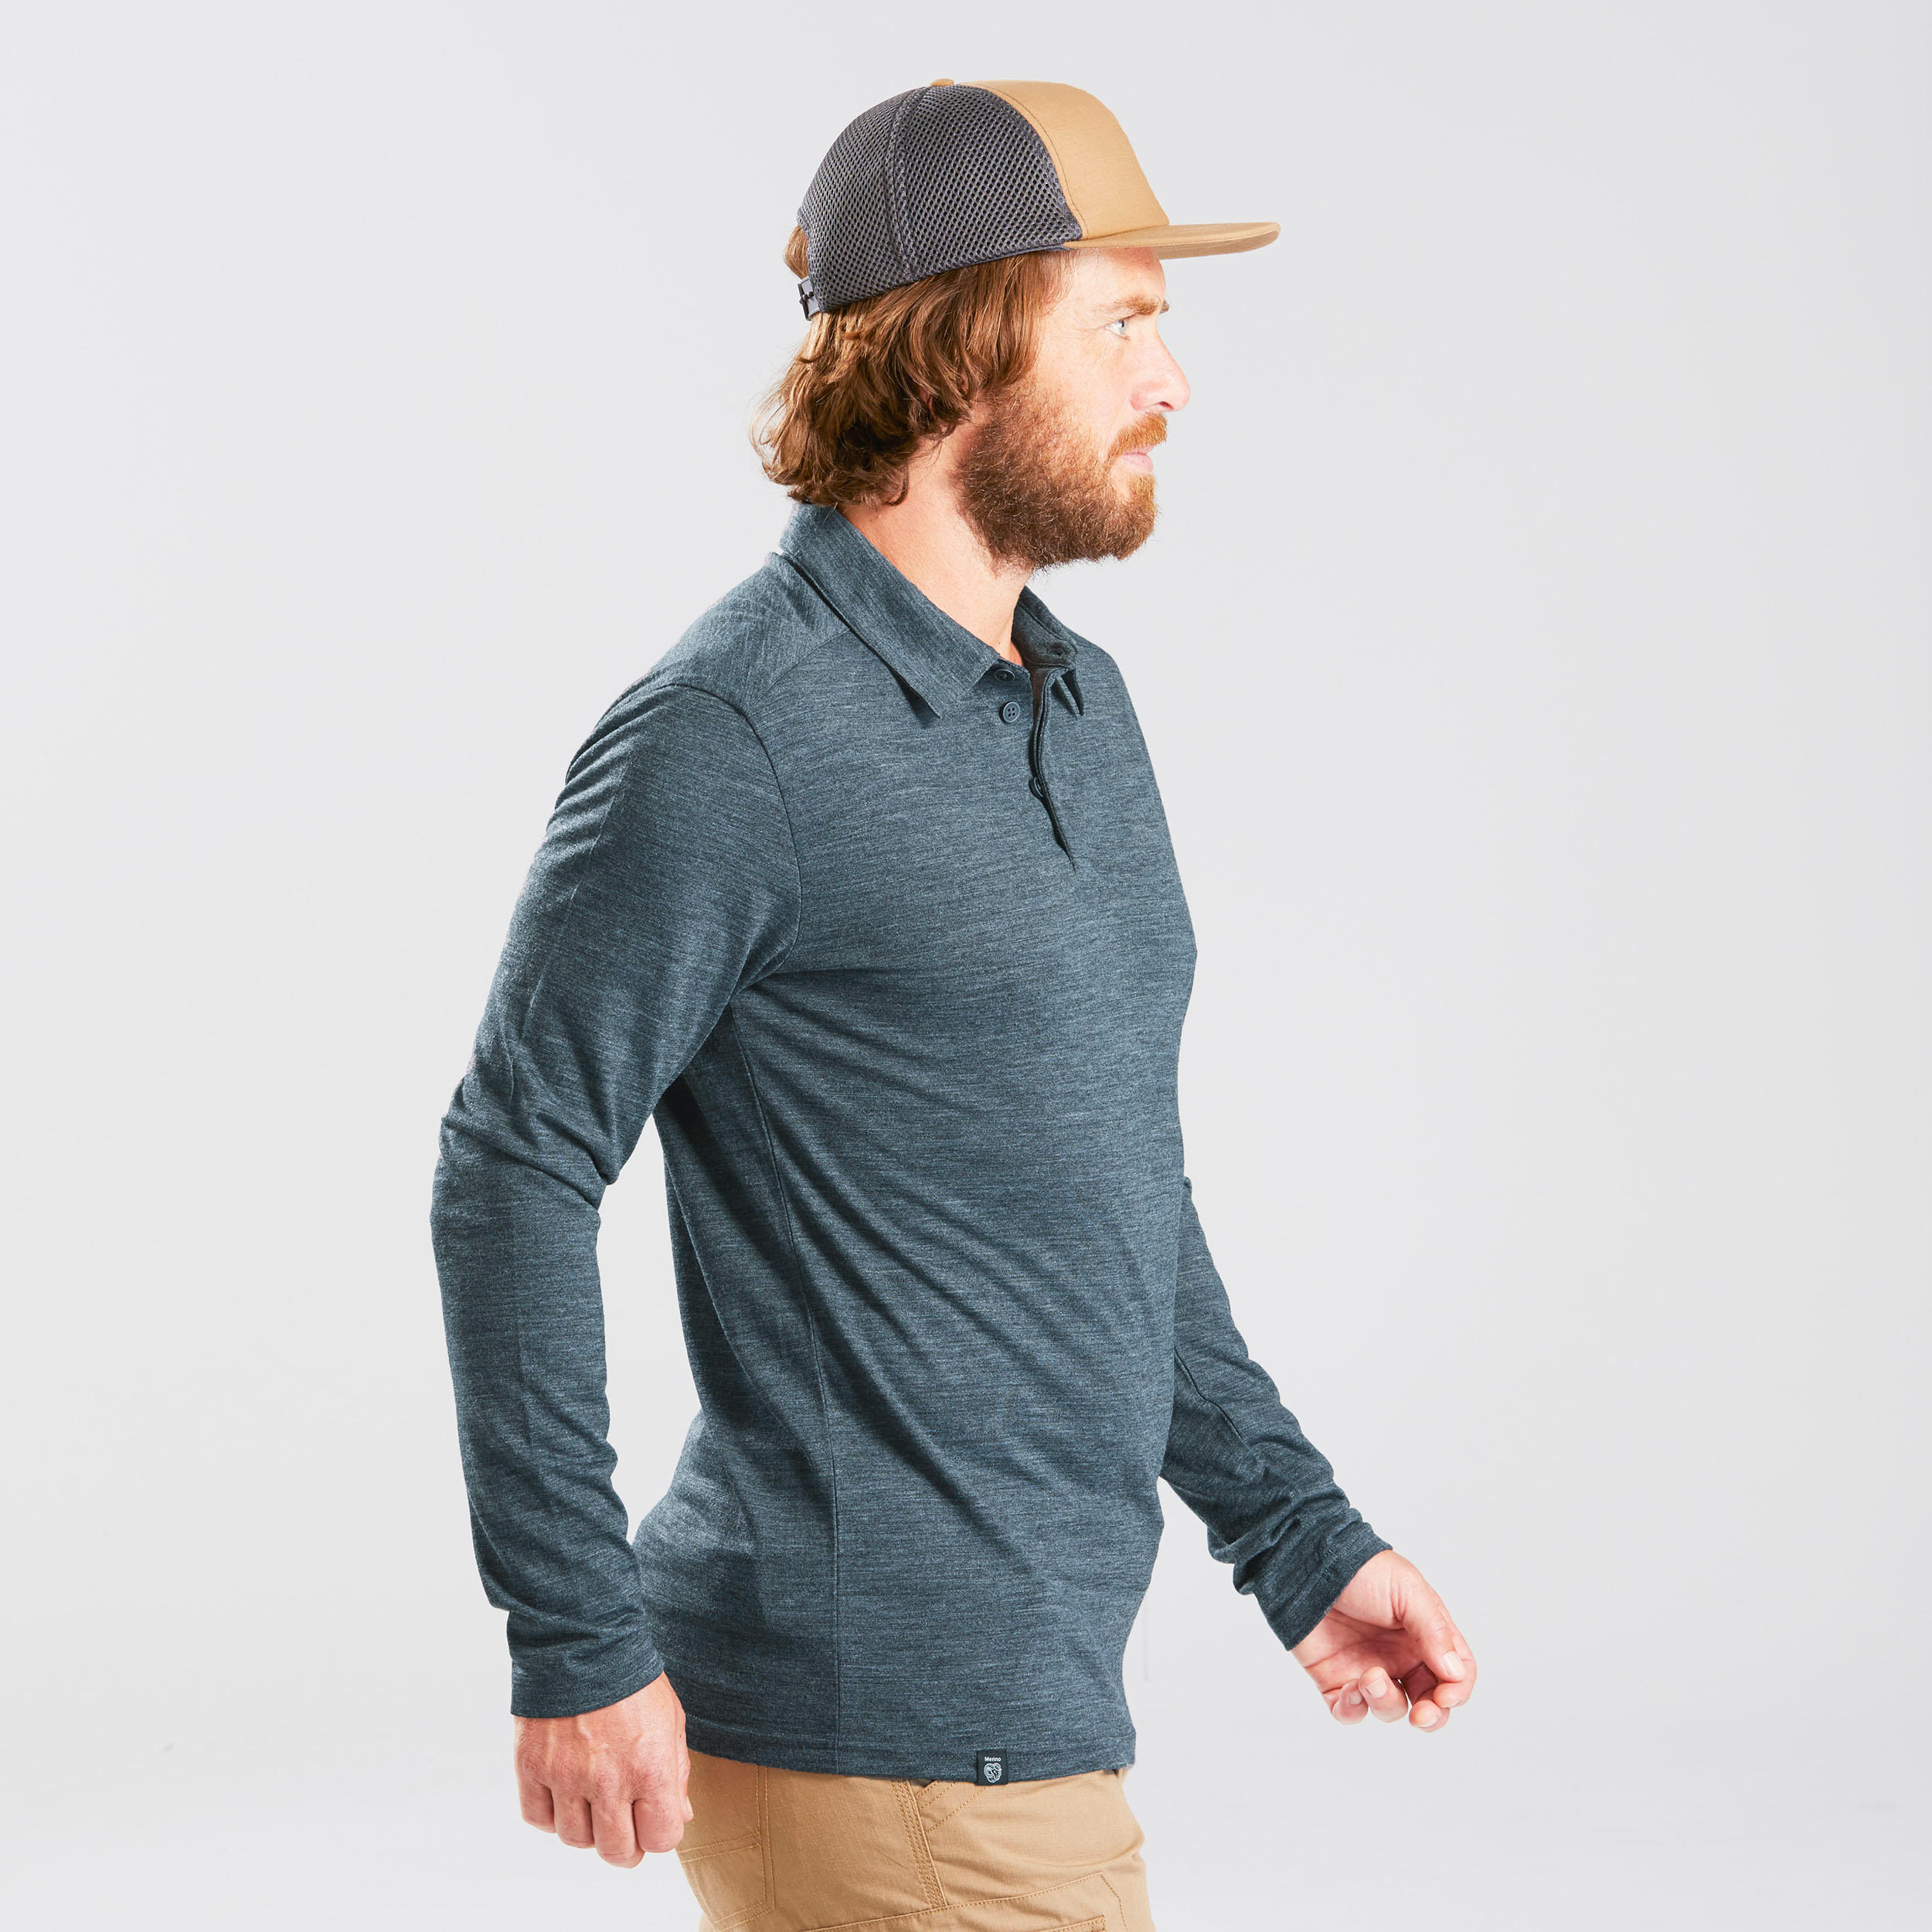 Men’s Long-sleeved Travel Trekking Merino Wool Polo Shirt - TRAVEL 500 Blue 5/10